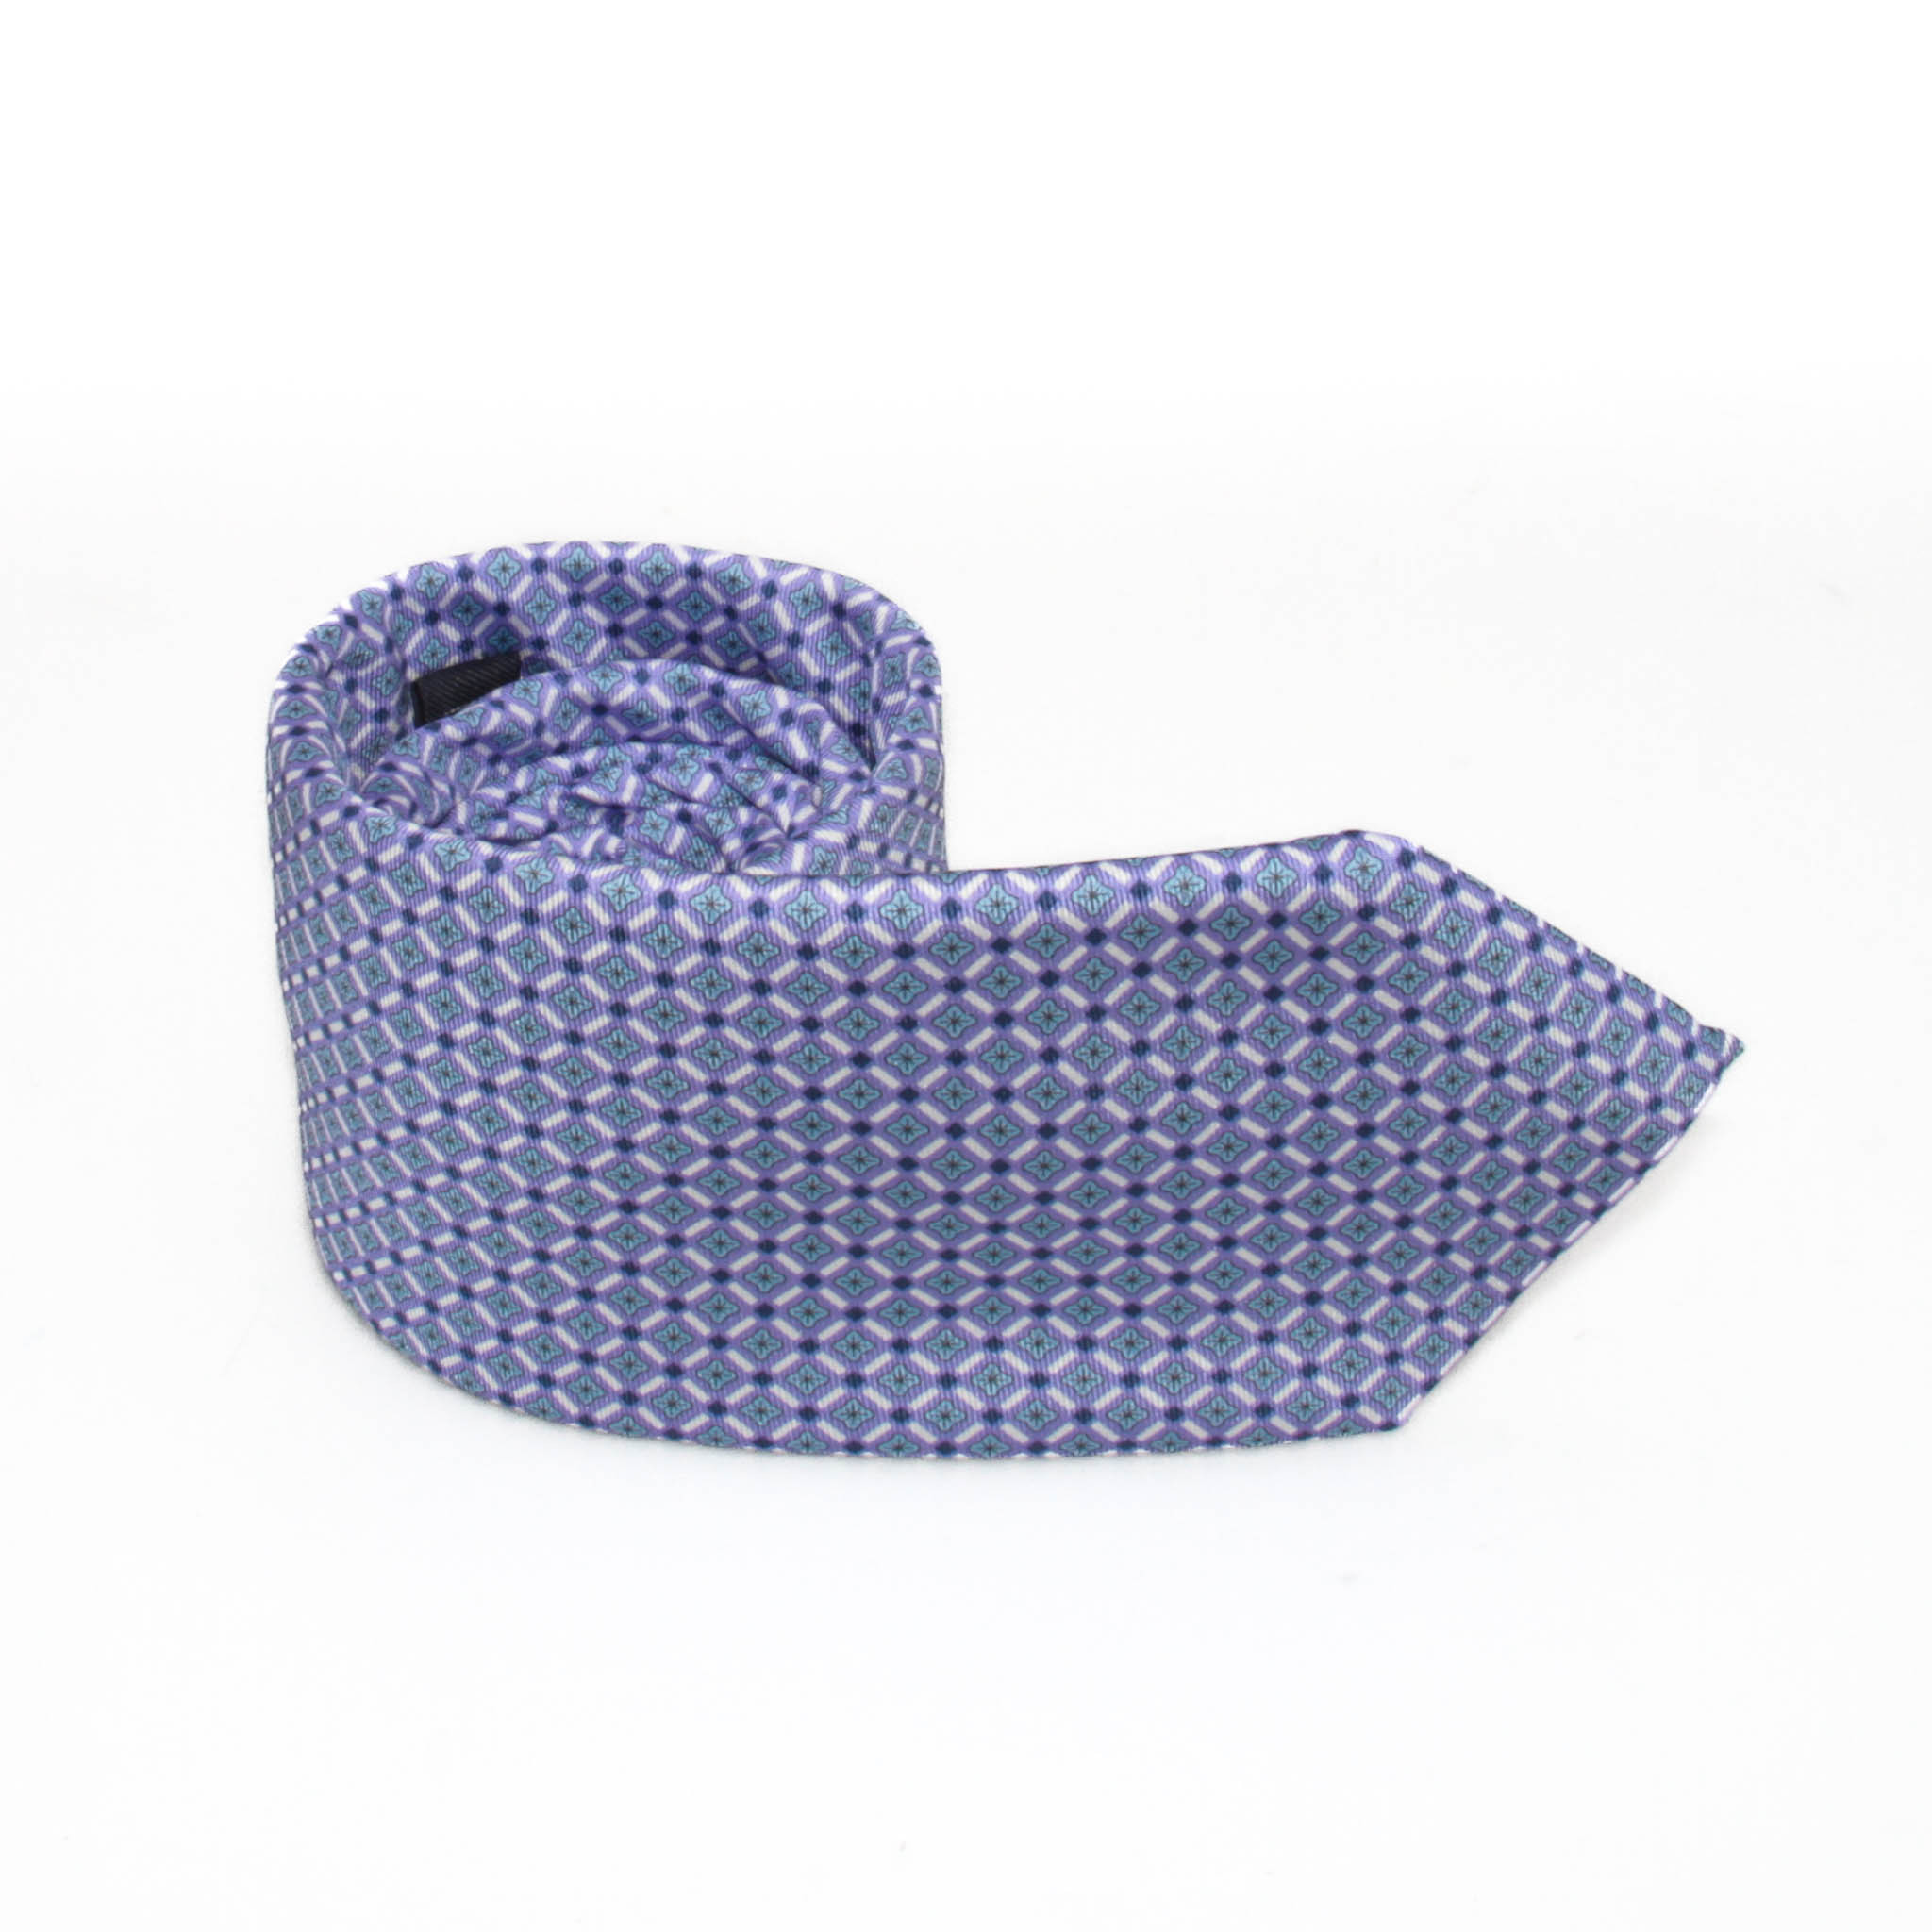 Cravate en soie : Base Violette à motifs bleus